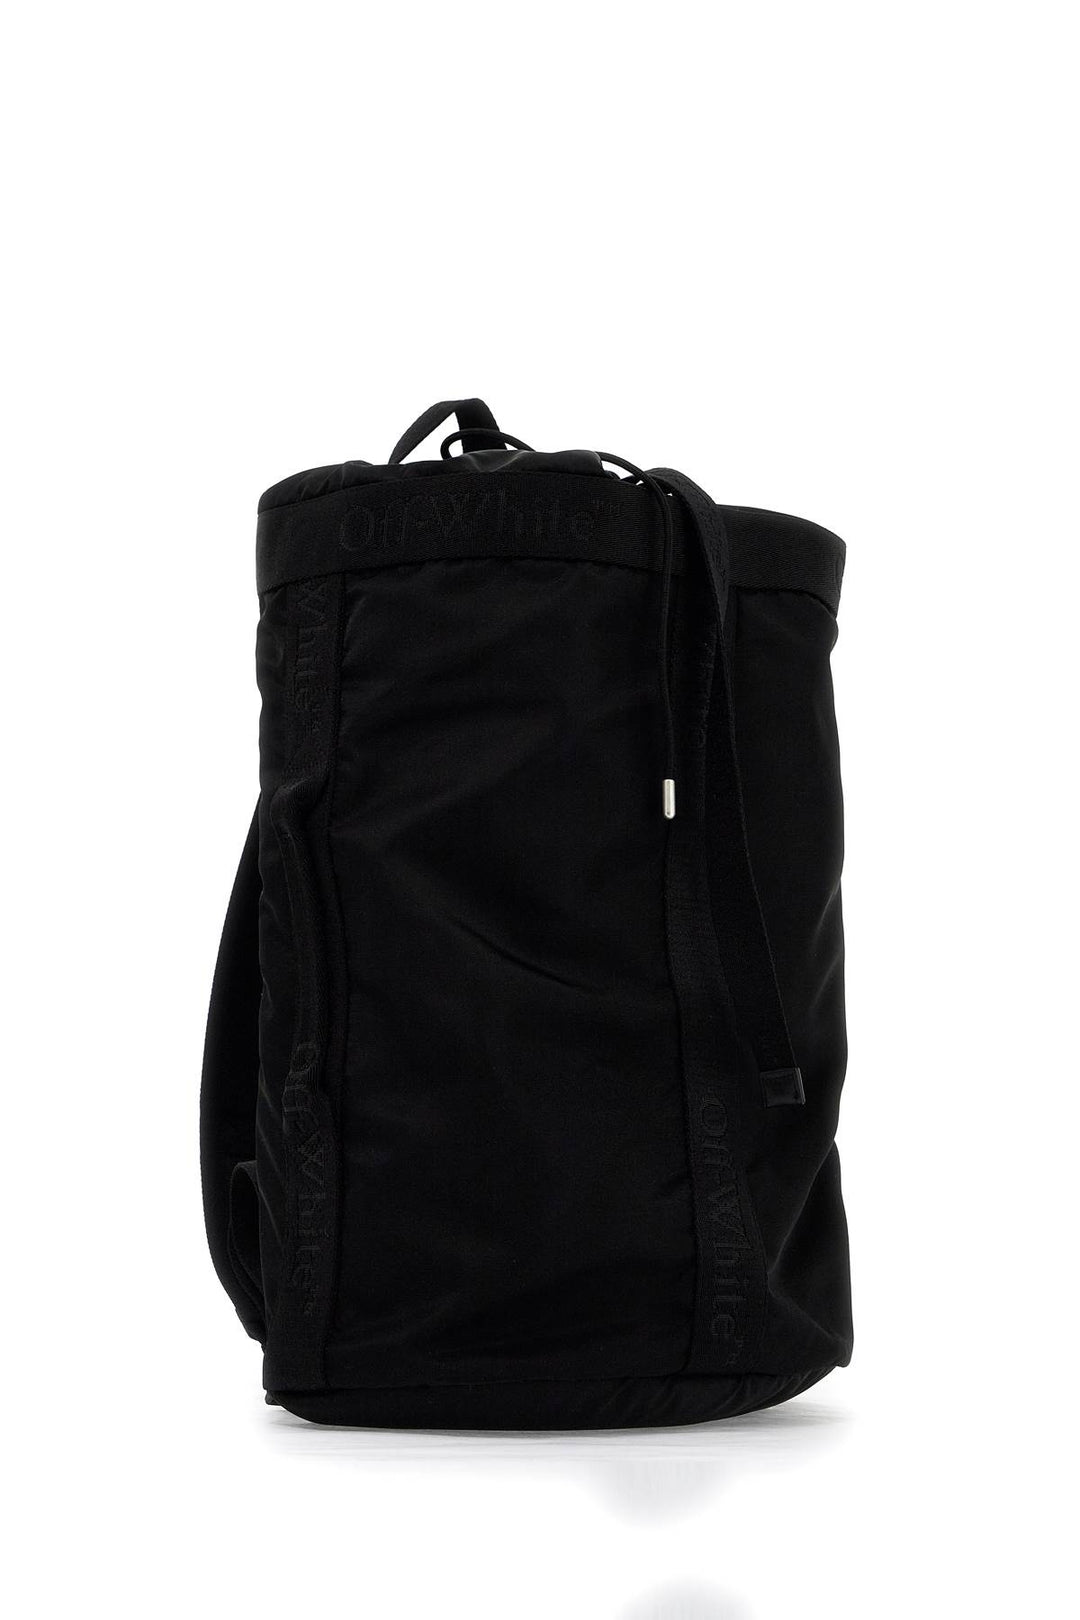 Off White Nylon Backpack For Everyday   Black